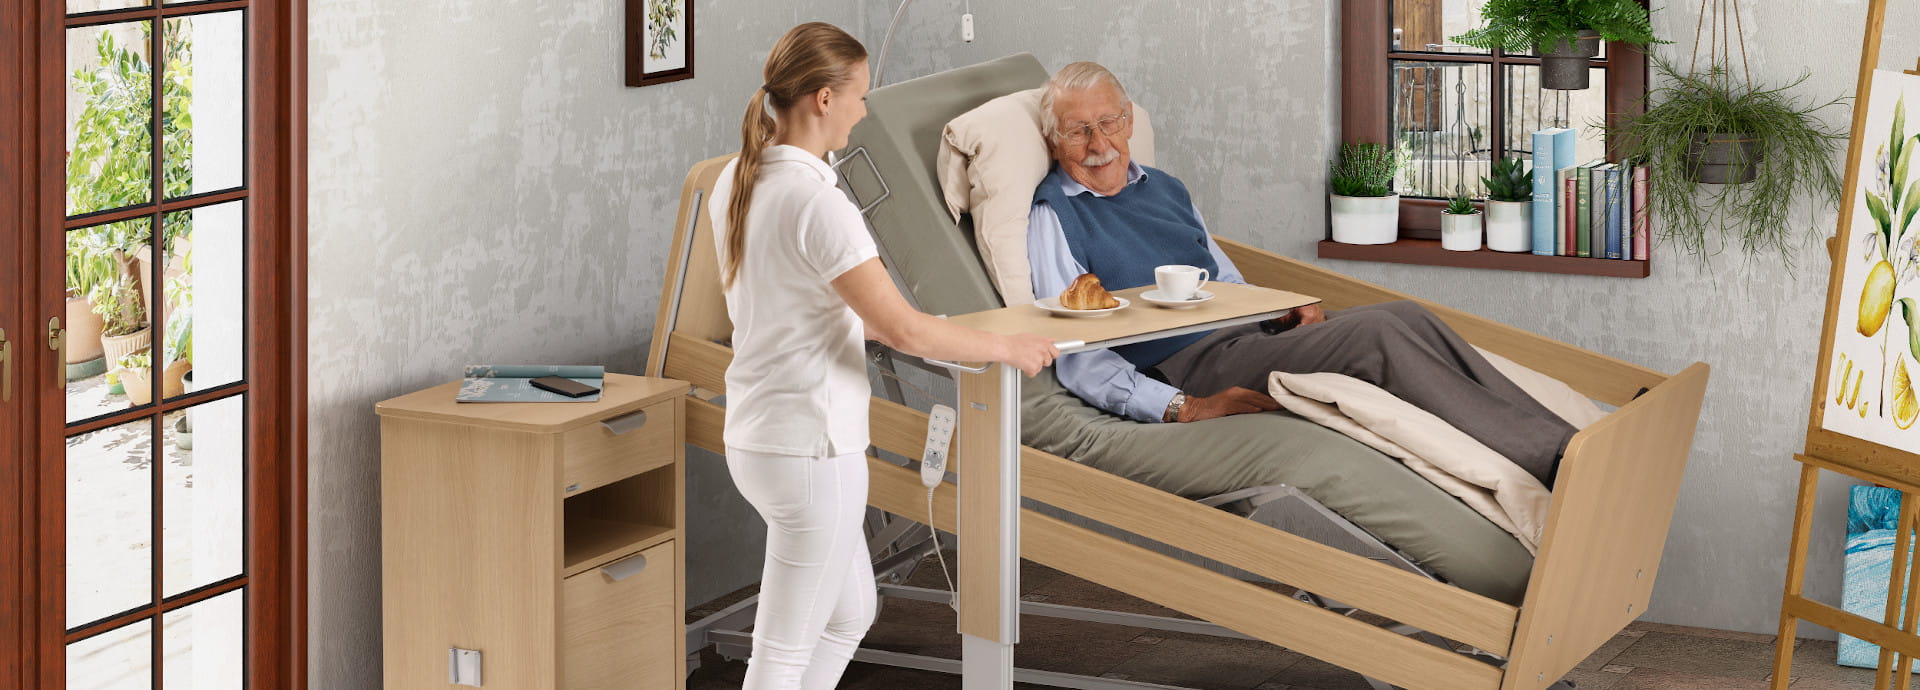 Mit innovativen Funktionen ermöglicht das Pflegebett movita sc komfortable Pflege und gewährleistet gleichzeitig höchste Produktsicherheit.  